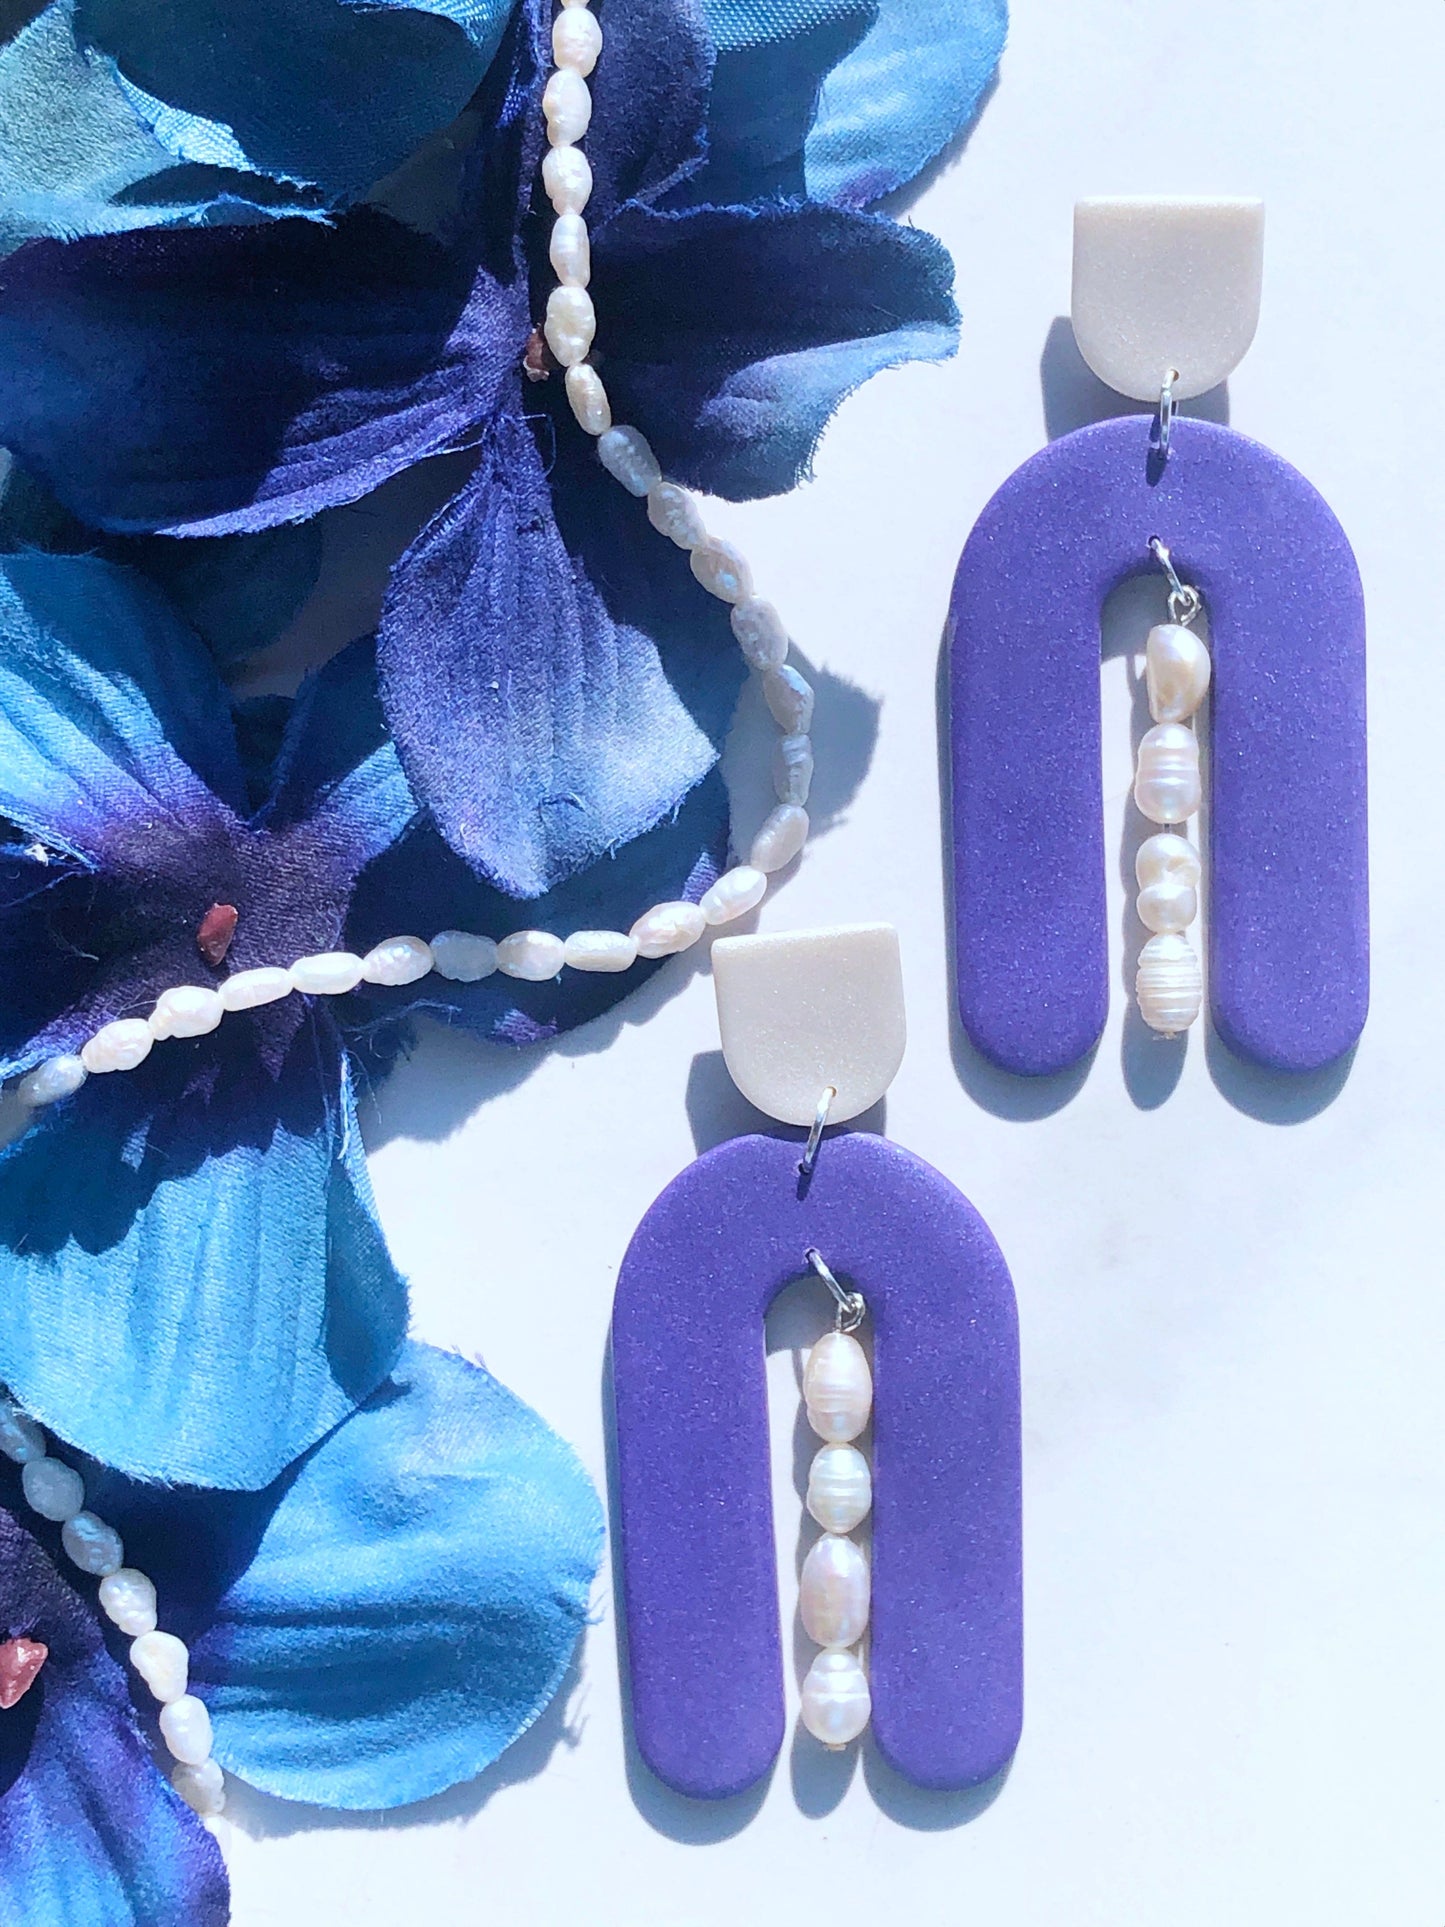 Earrings Lucia Lucia Earrings, Purple & Pearl Polymer Clay Earrings, Purple Earrings